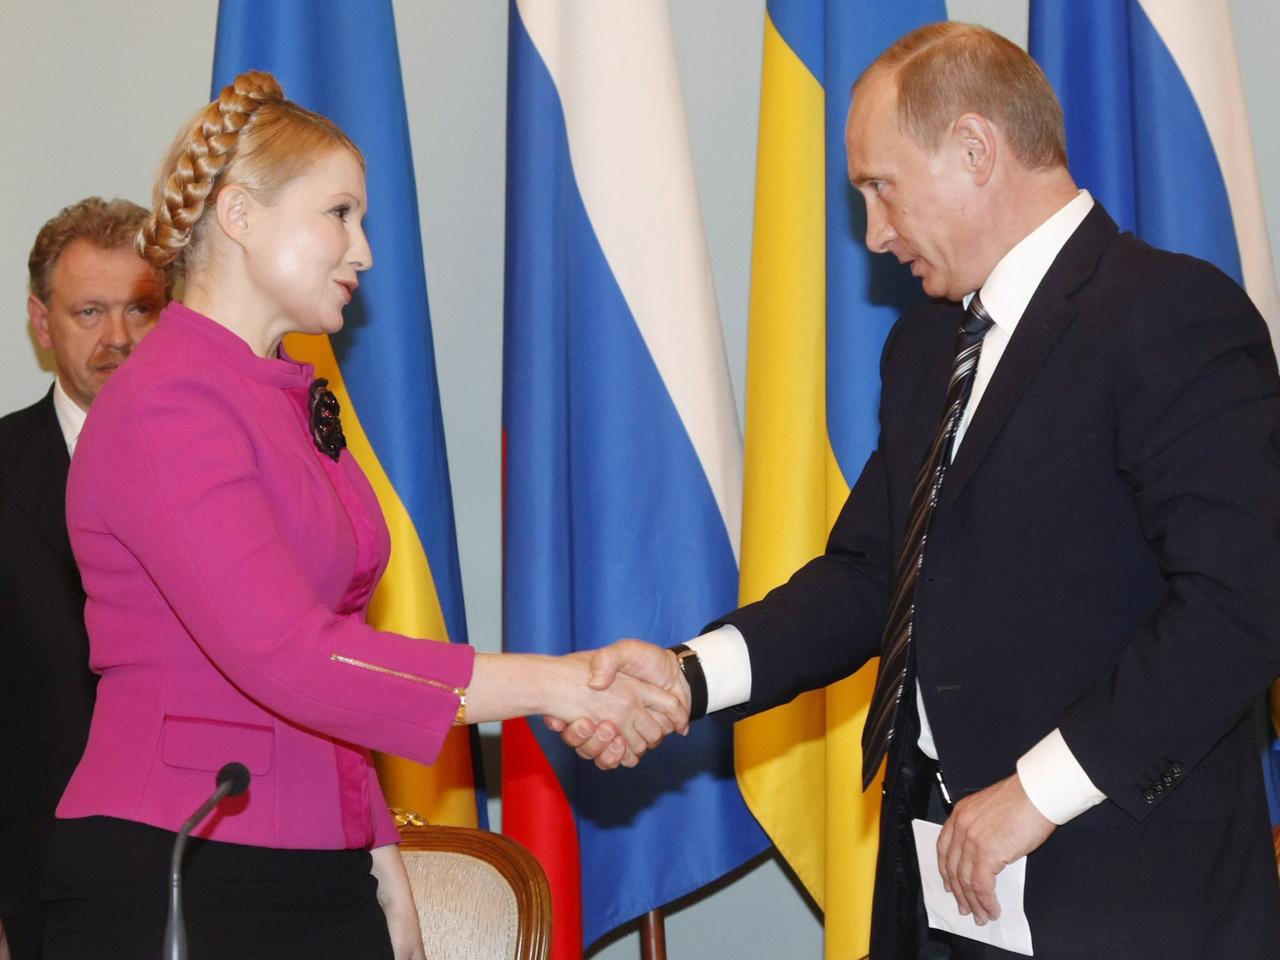 Der russische Ministerpräsident Wladimir Putin und seine damalige ukrainische Amtskollegin Julia Timoschenko besiegeln das Ende des Gasstreits 2009 mit einem Handschlag